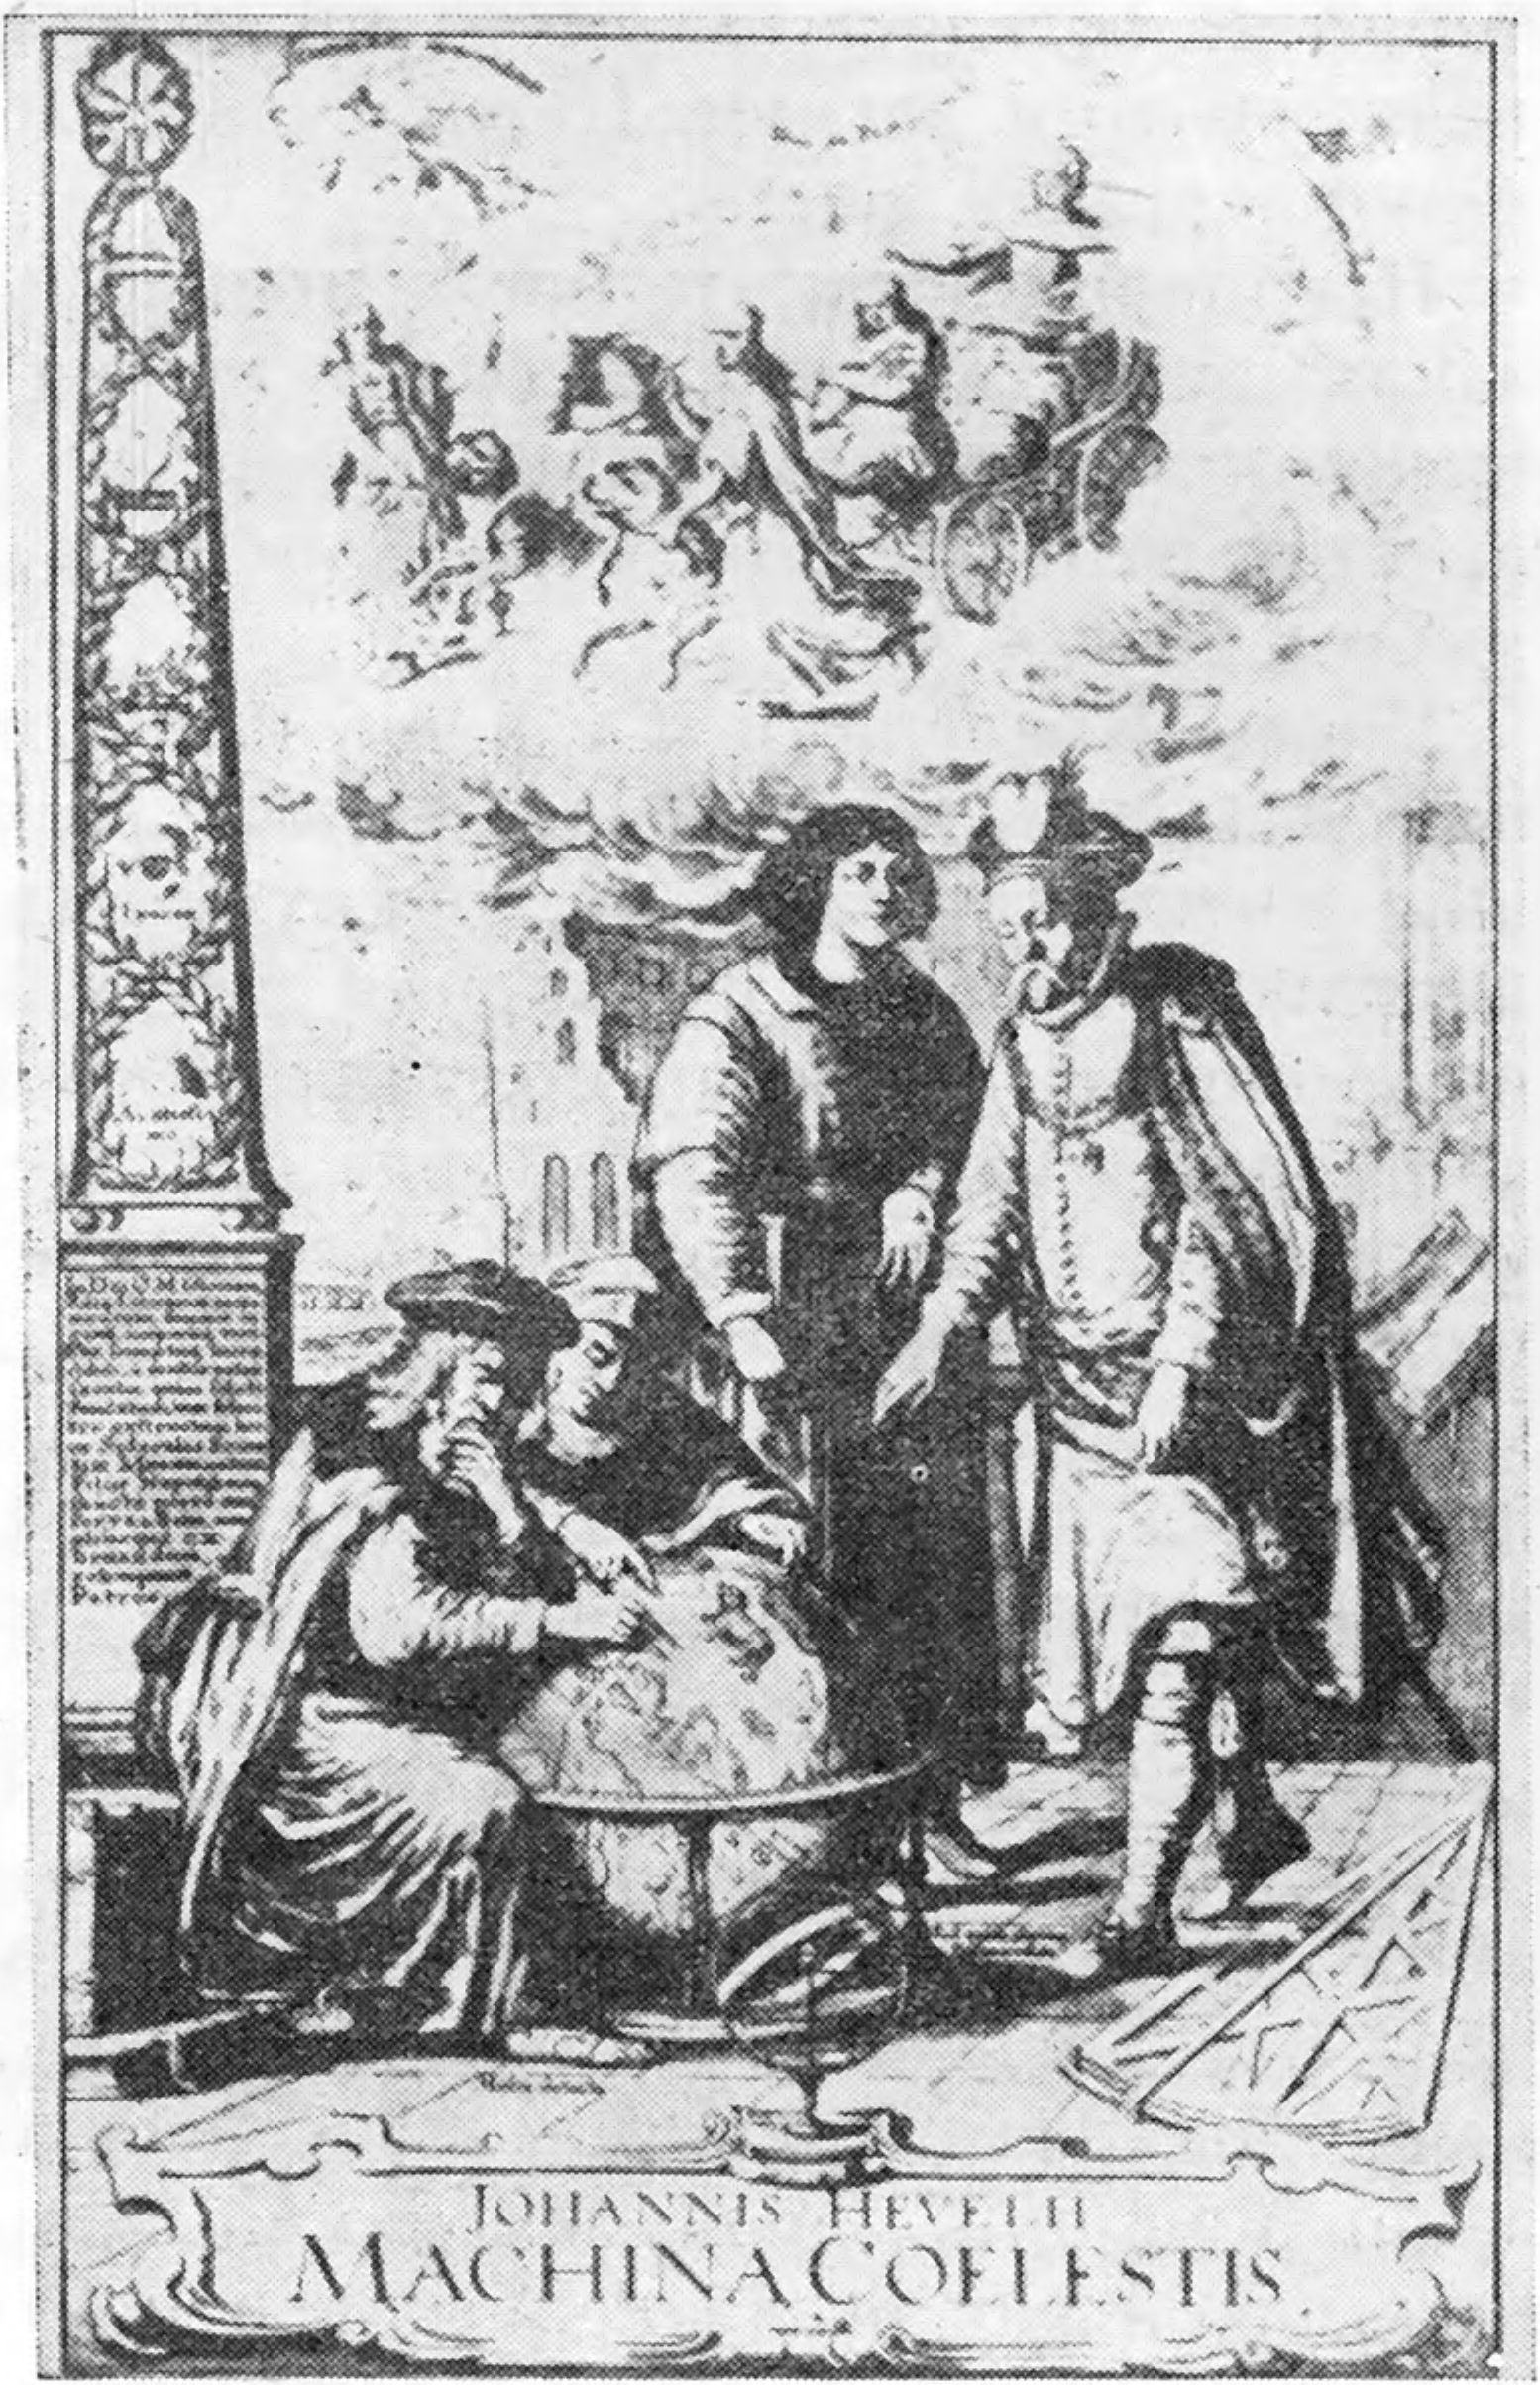 Титульный лист книги Гевелия «Machina coelestis» с изображениями Птолемея, Тихо Браге и Коперника